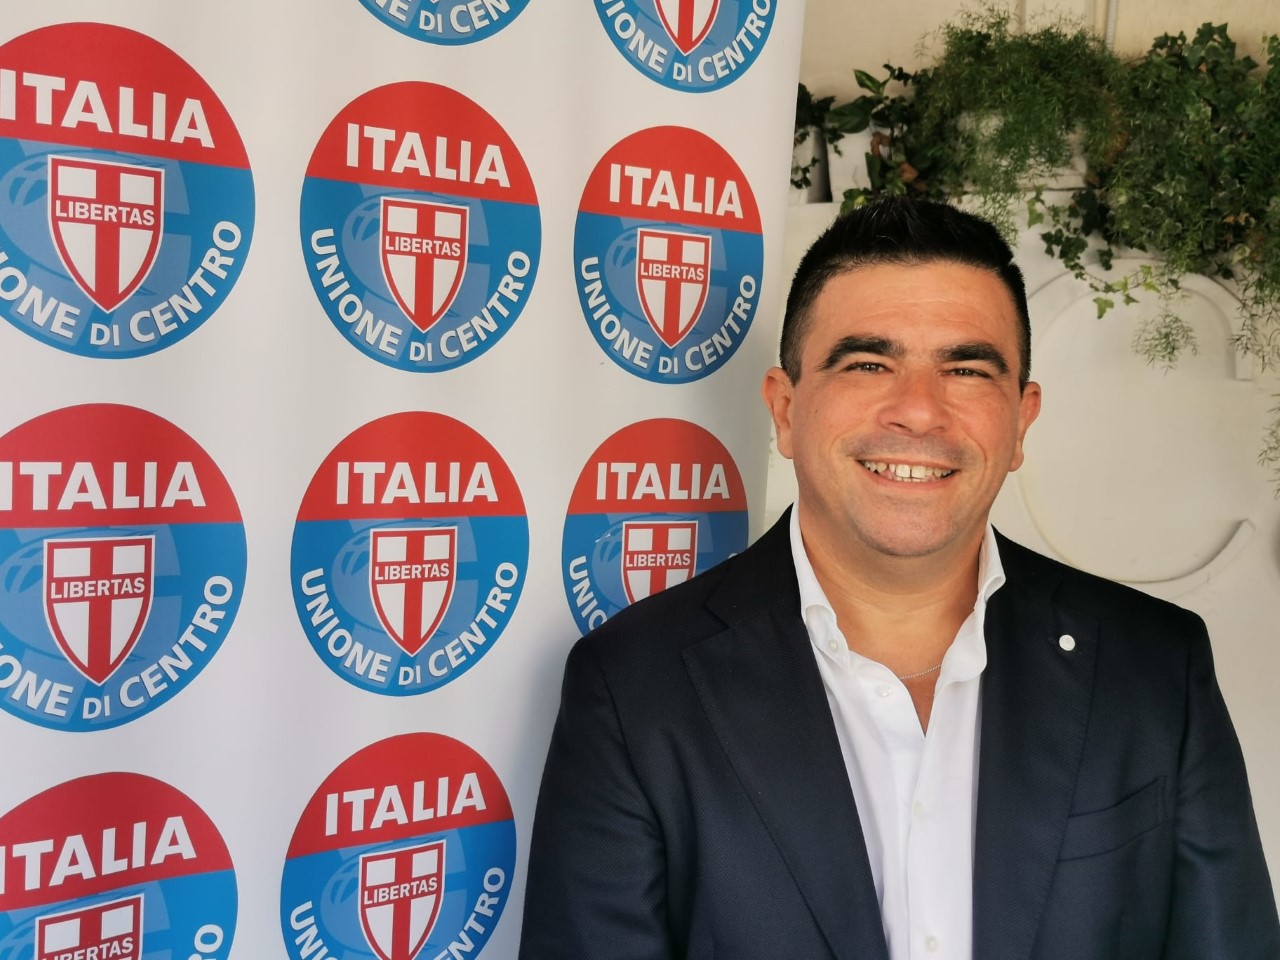 Elezioni a Roccapiemonte, l’Udc sostiene Terrone. Polichetti: “Una donna candidata, unica vera novità politica”